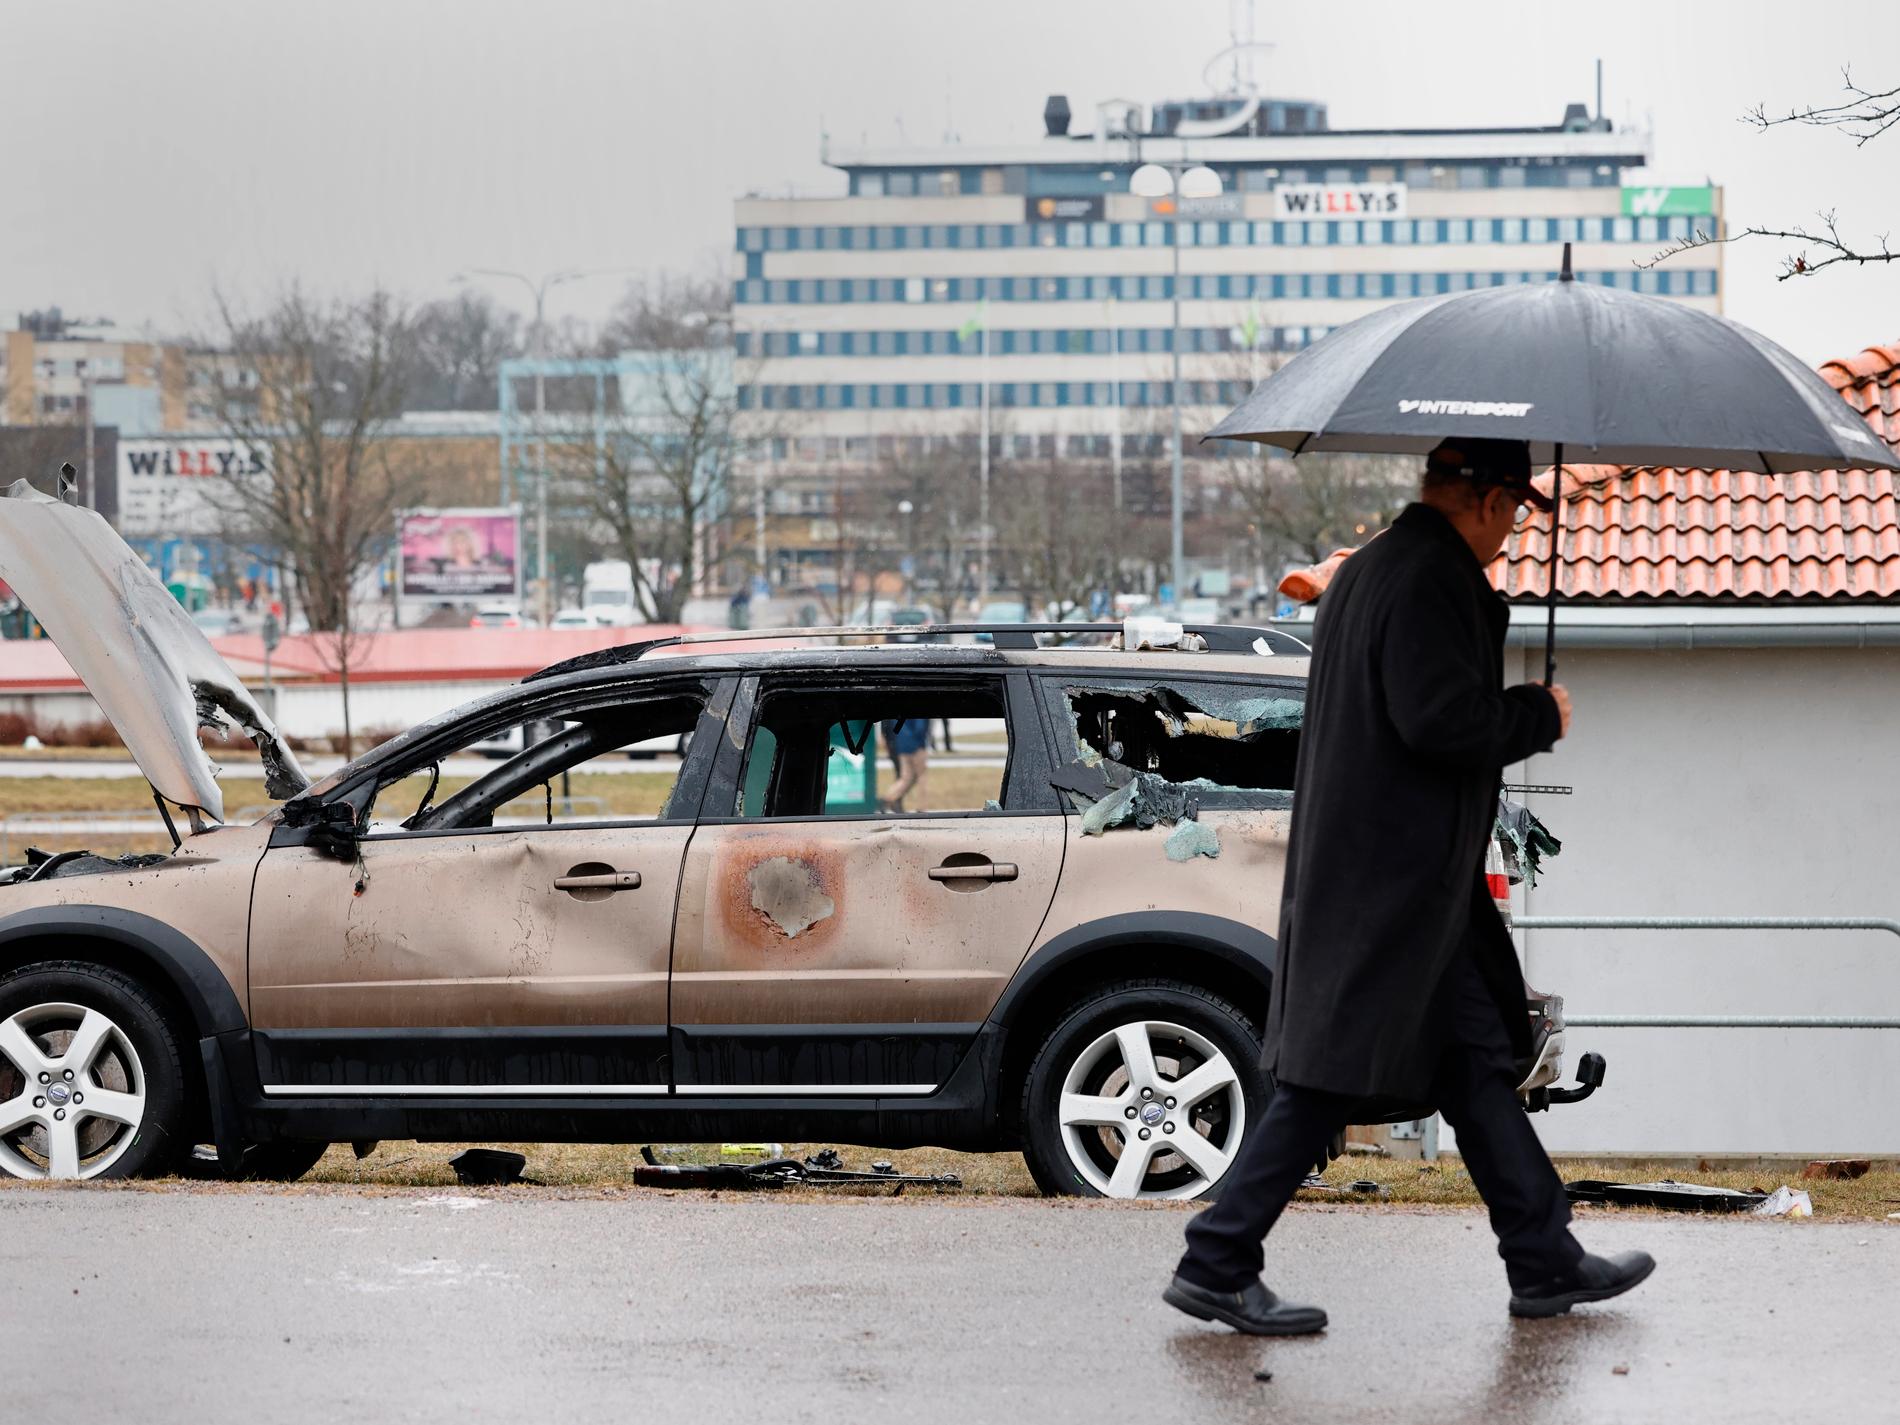 Fler döms efter upploppen i Linköping